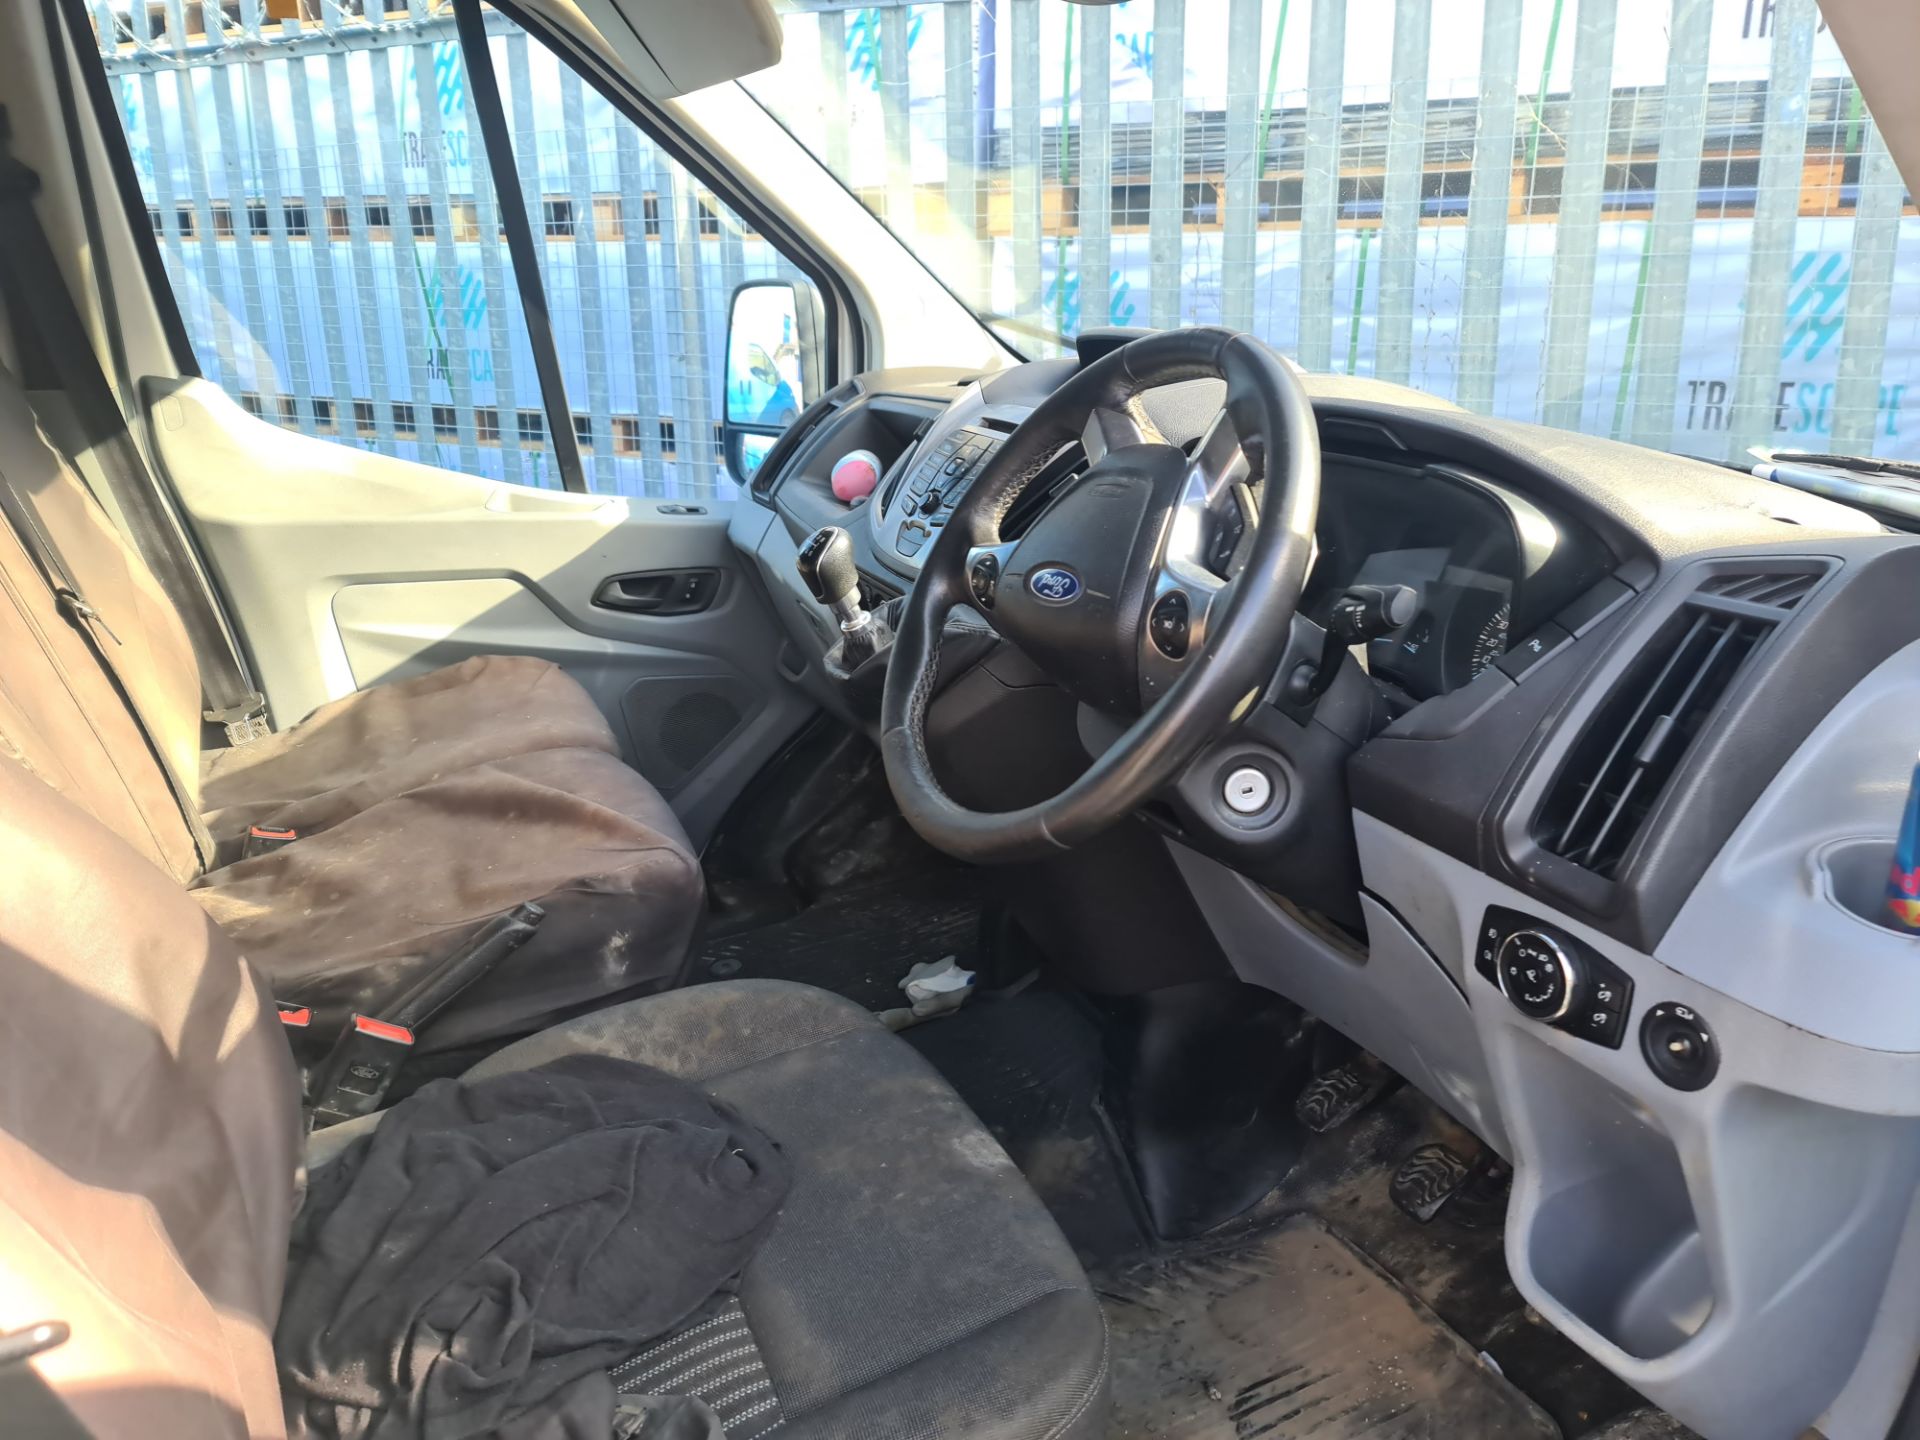 2018 Ford Transit 350 L4 H3 panel van - Image 24 of 61